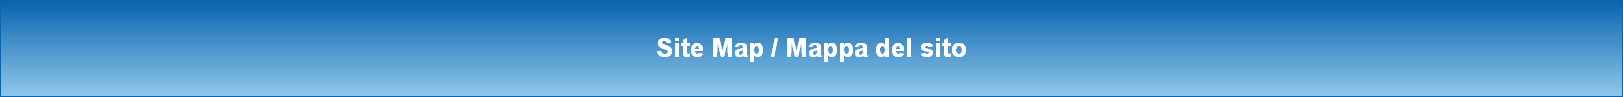 Site Map / Mappa del sito